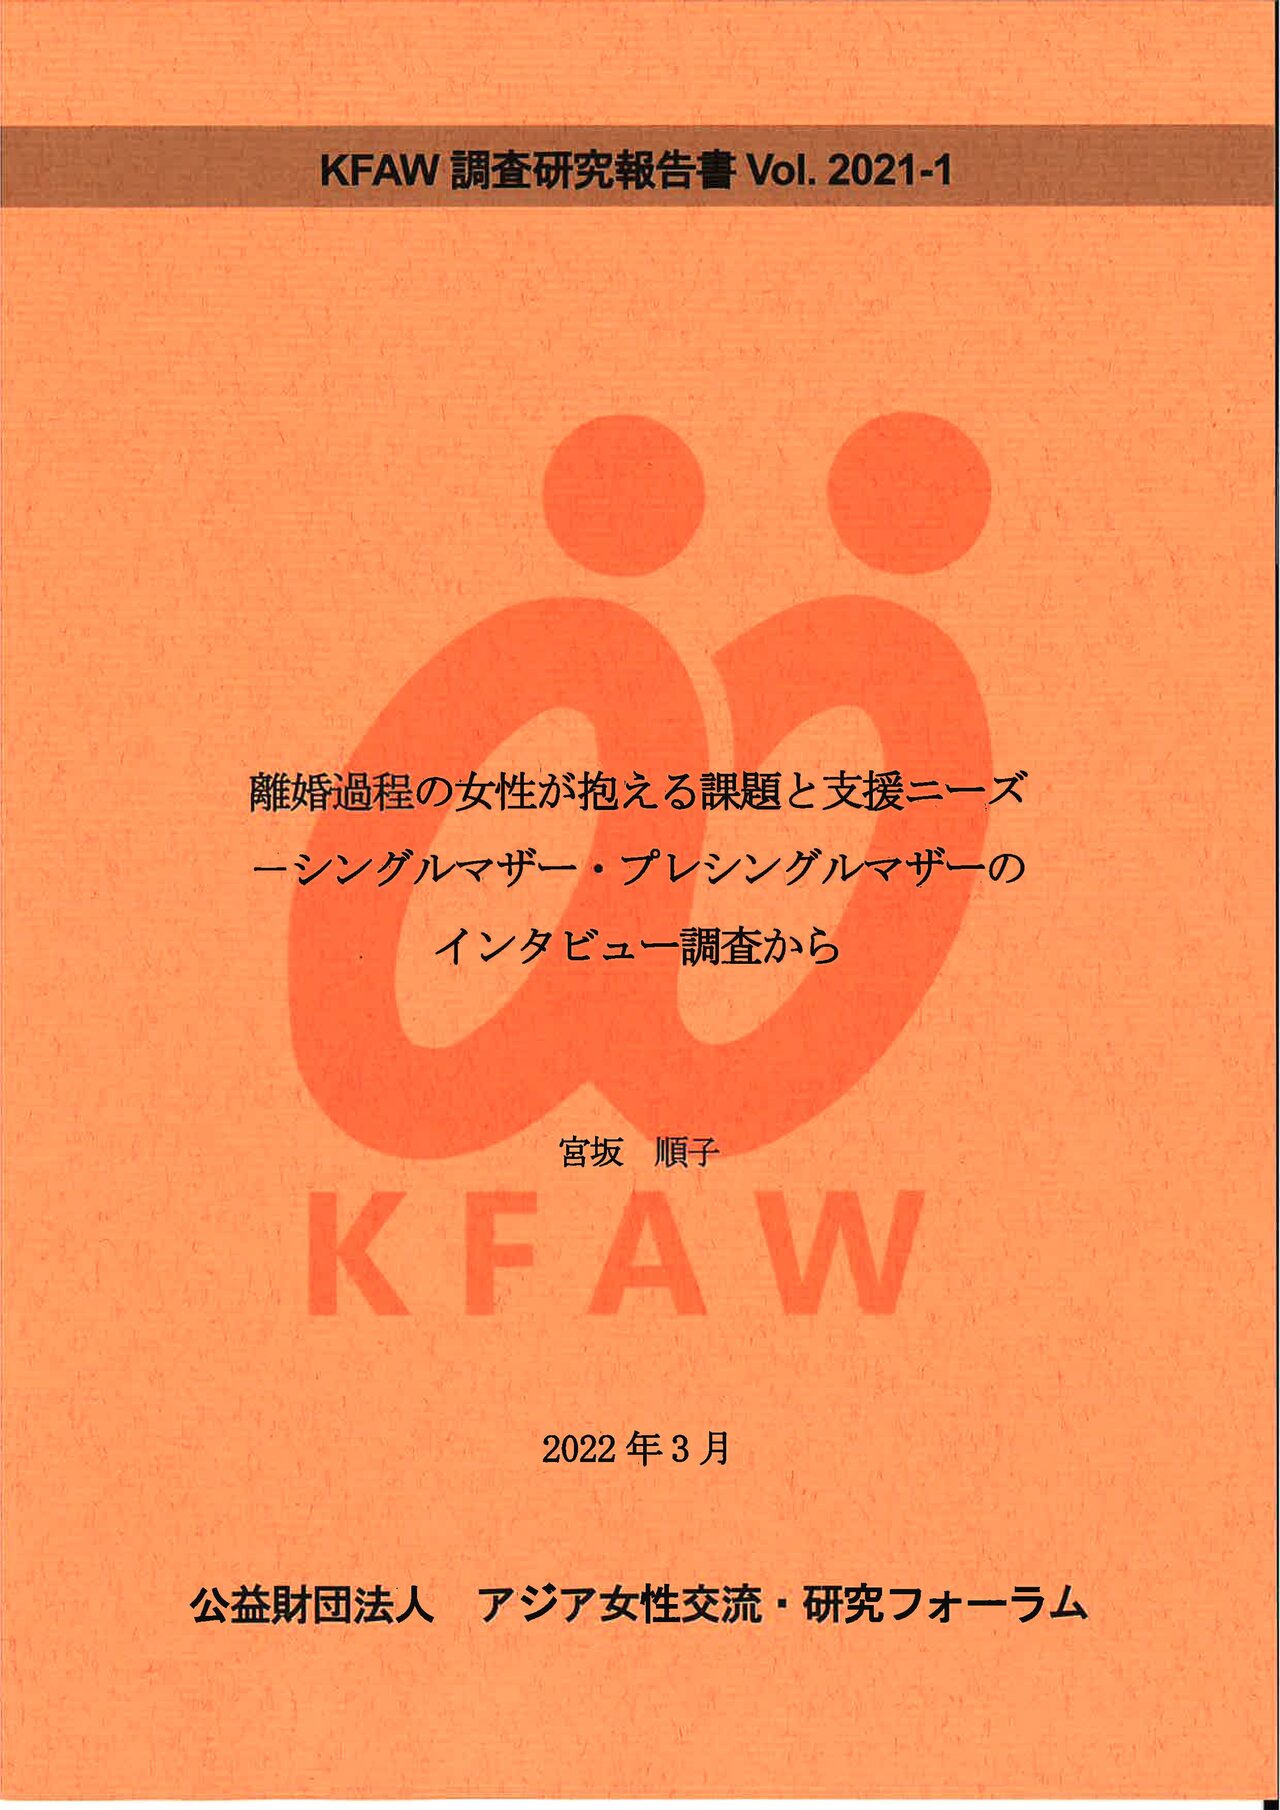 (日本語) Vol.2021-1  「離婚過程の女性が抱える課題と支援ニーズ　－シングルマザー・プレシングルマザーのインタビュー調査から」（2022年3月）